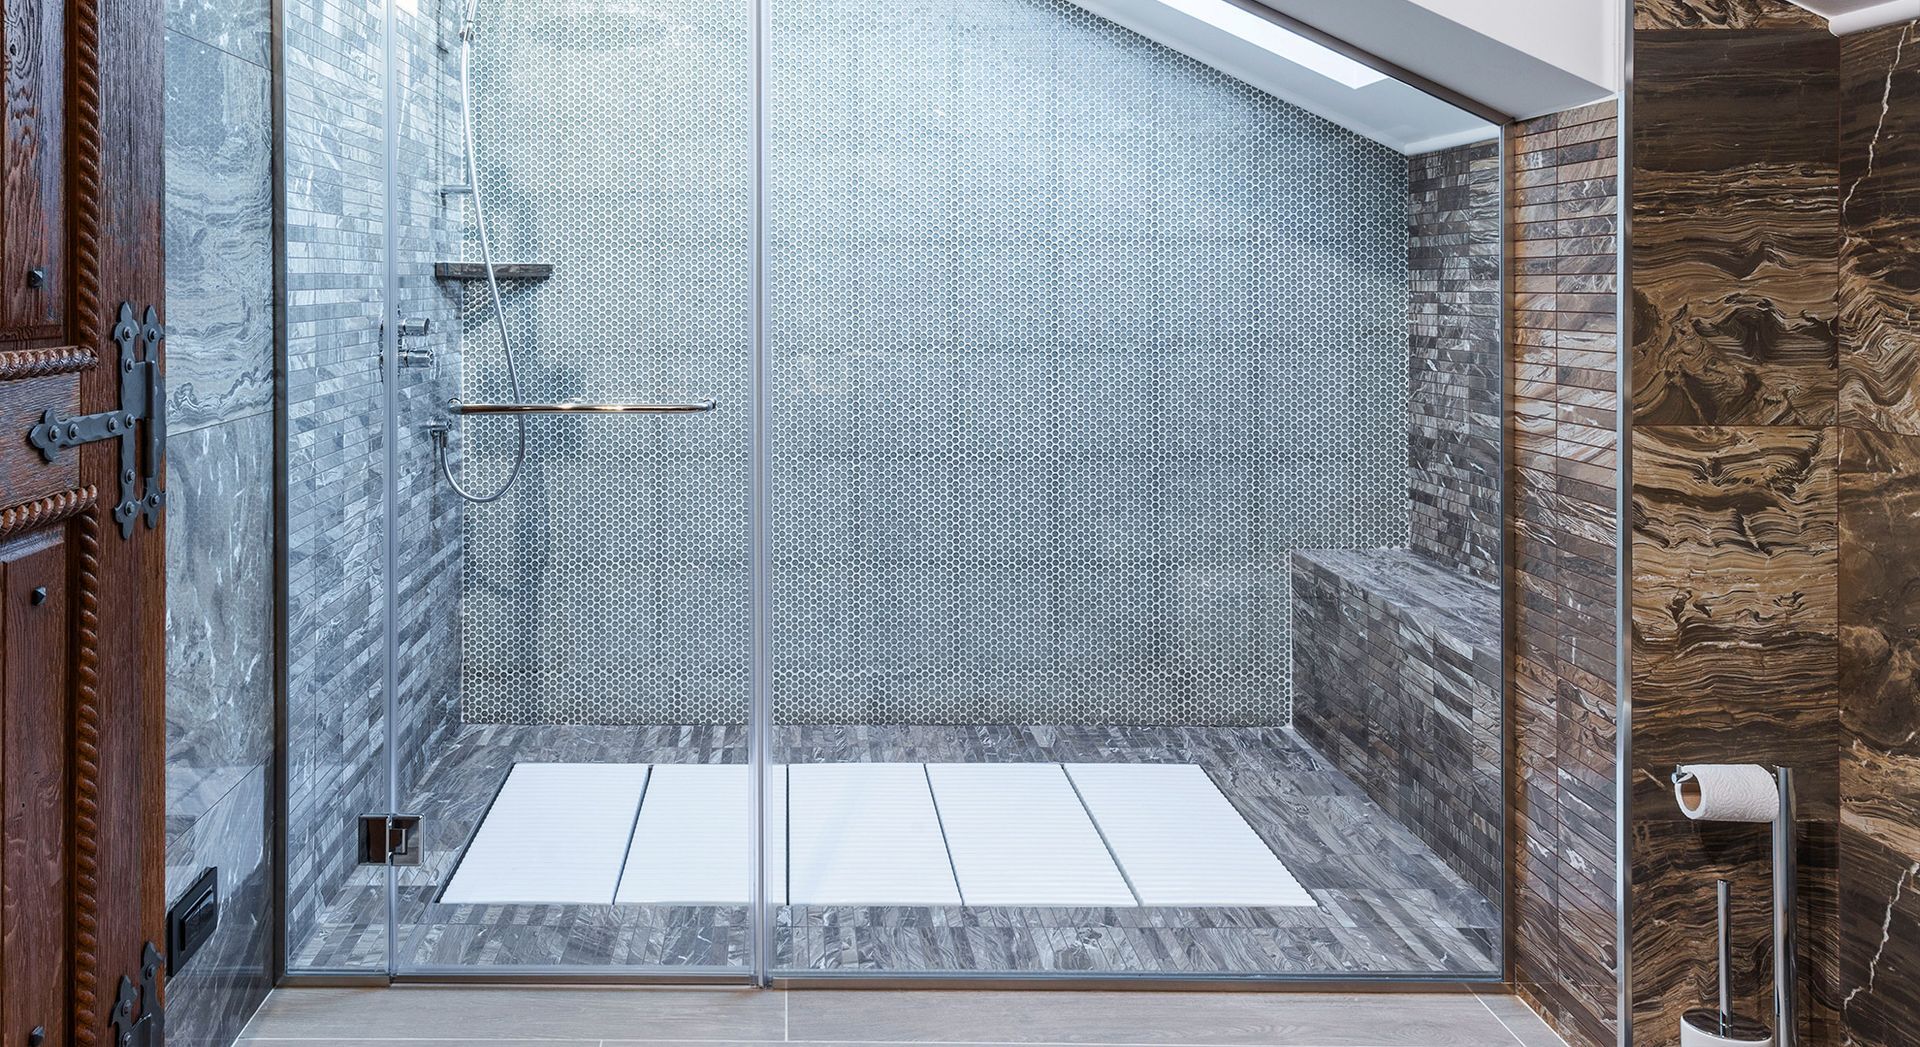 Glass and metal tiles